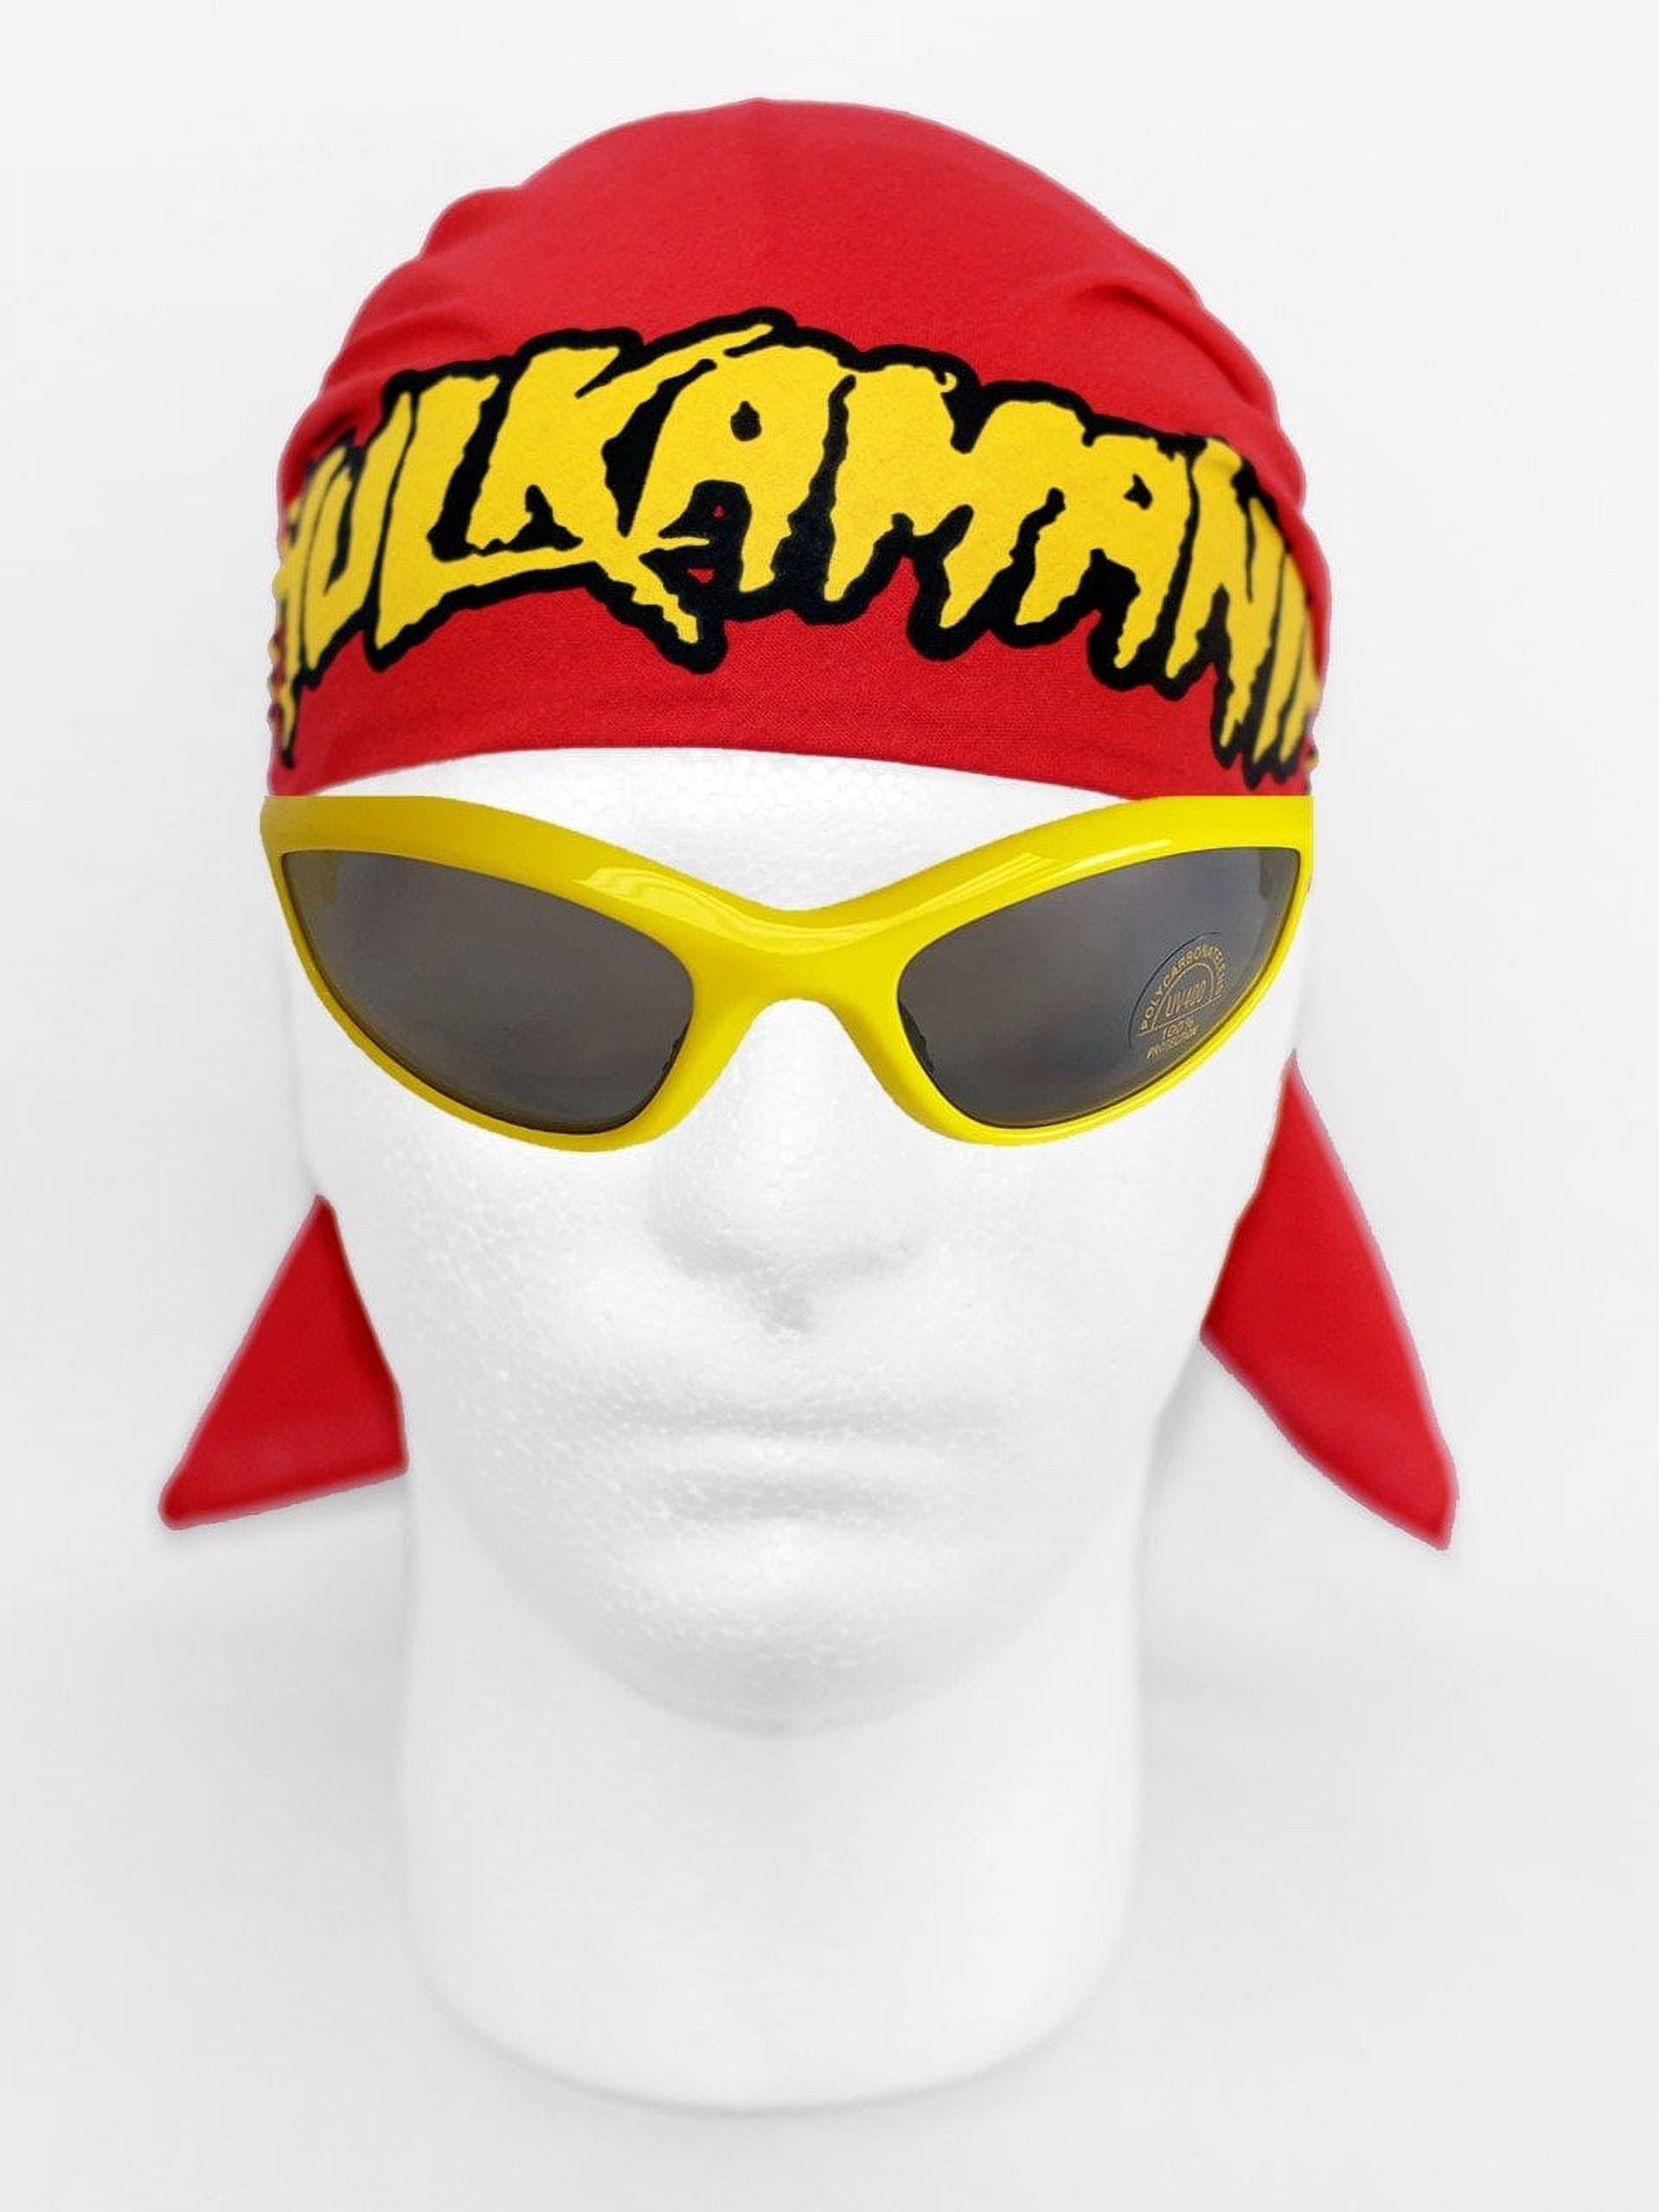 Hulk Hogan Hulkamania Bandana Sunglasses Costume -Red-Yellow - Walmart.com